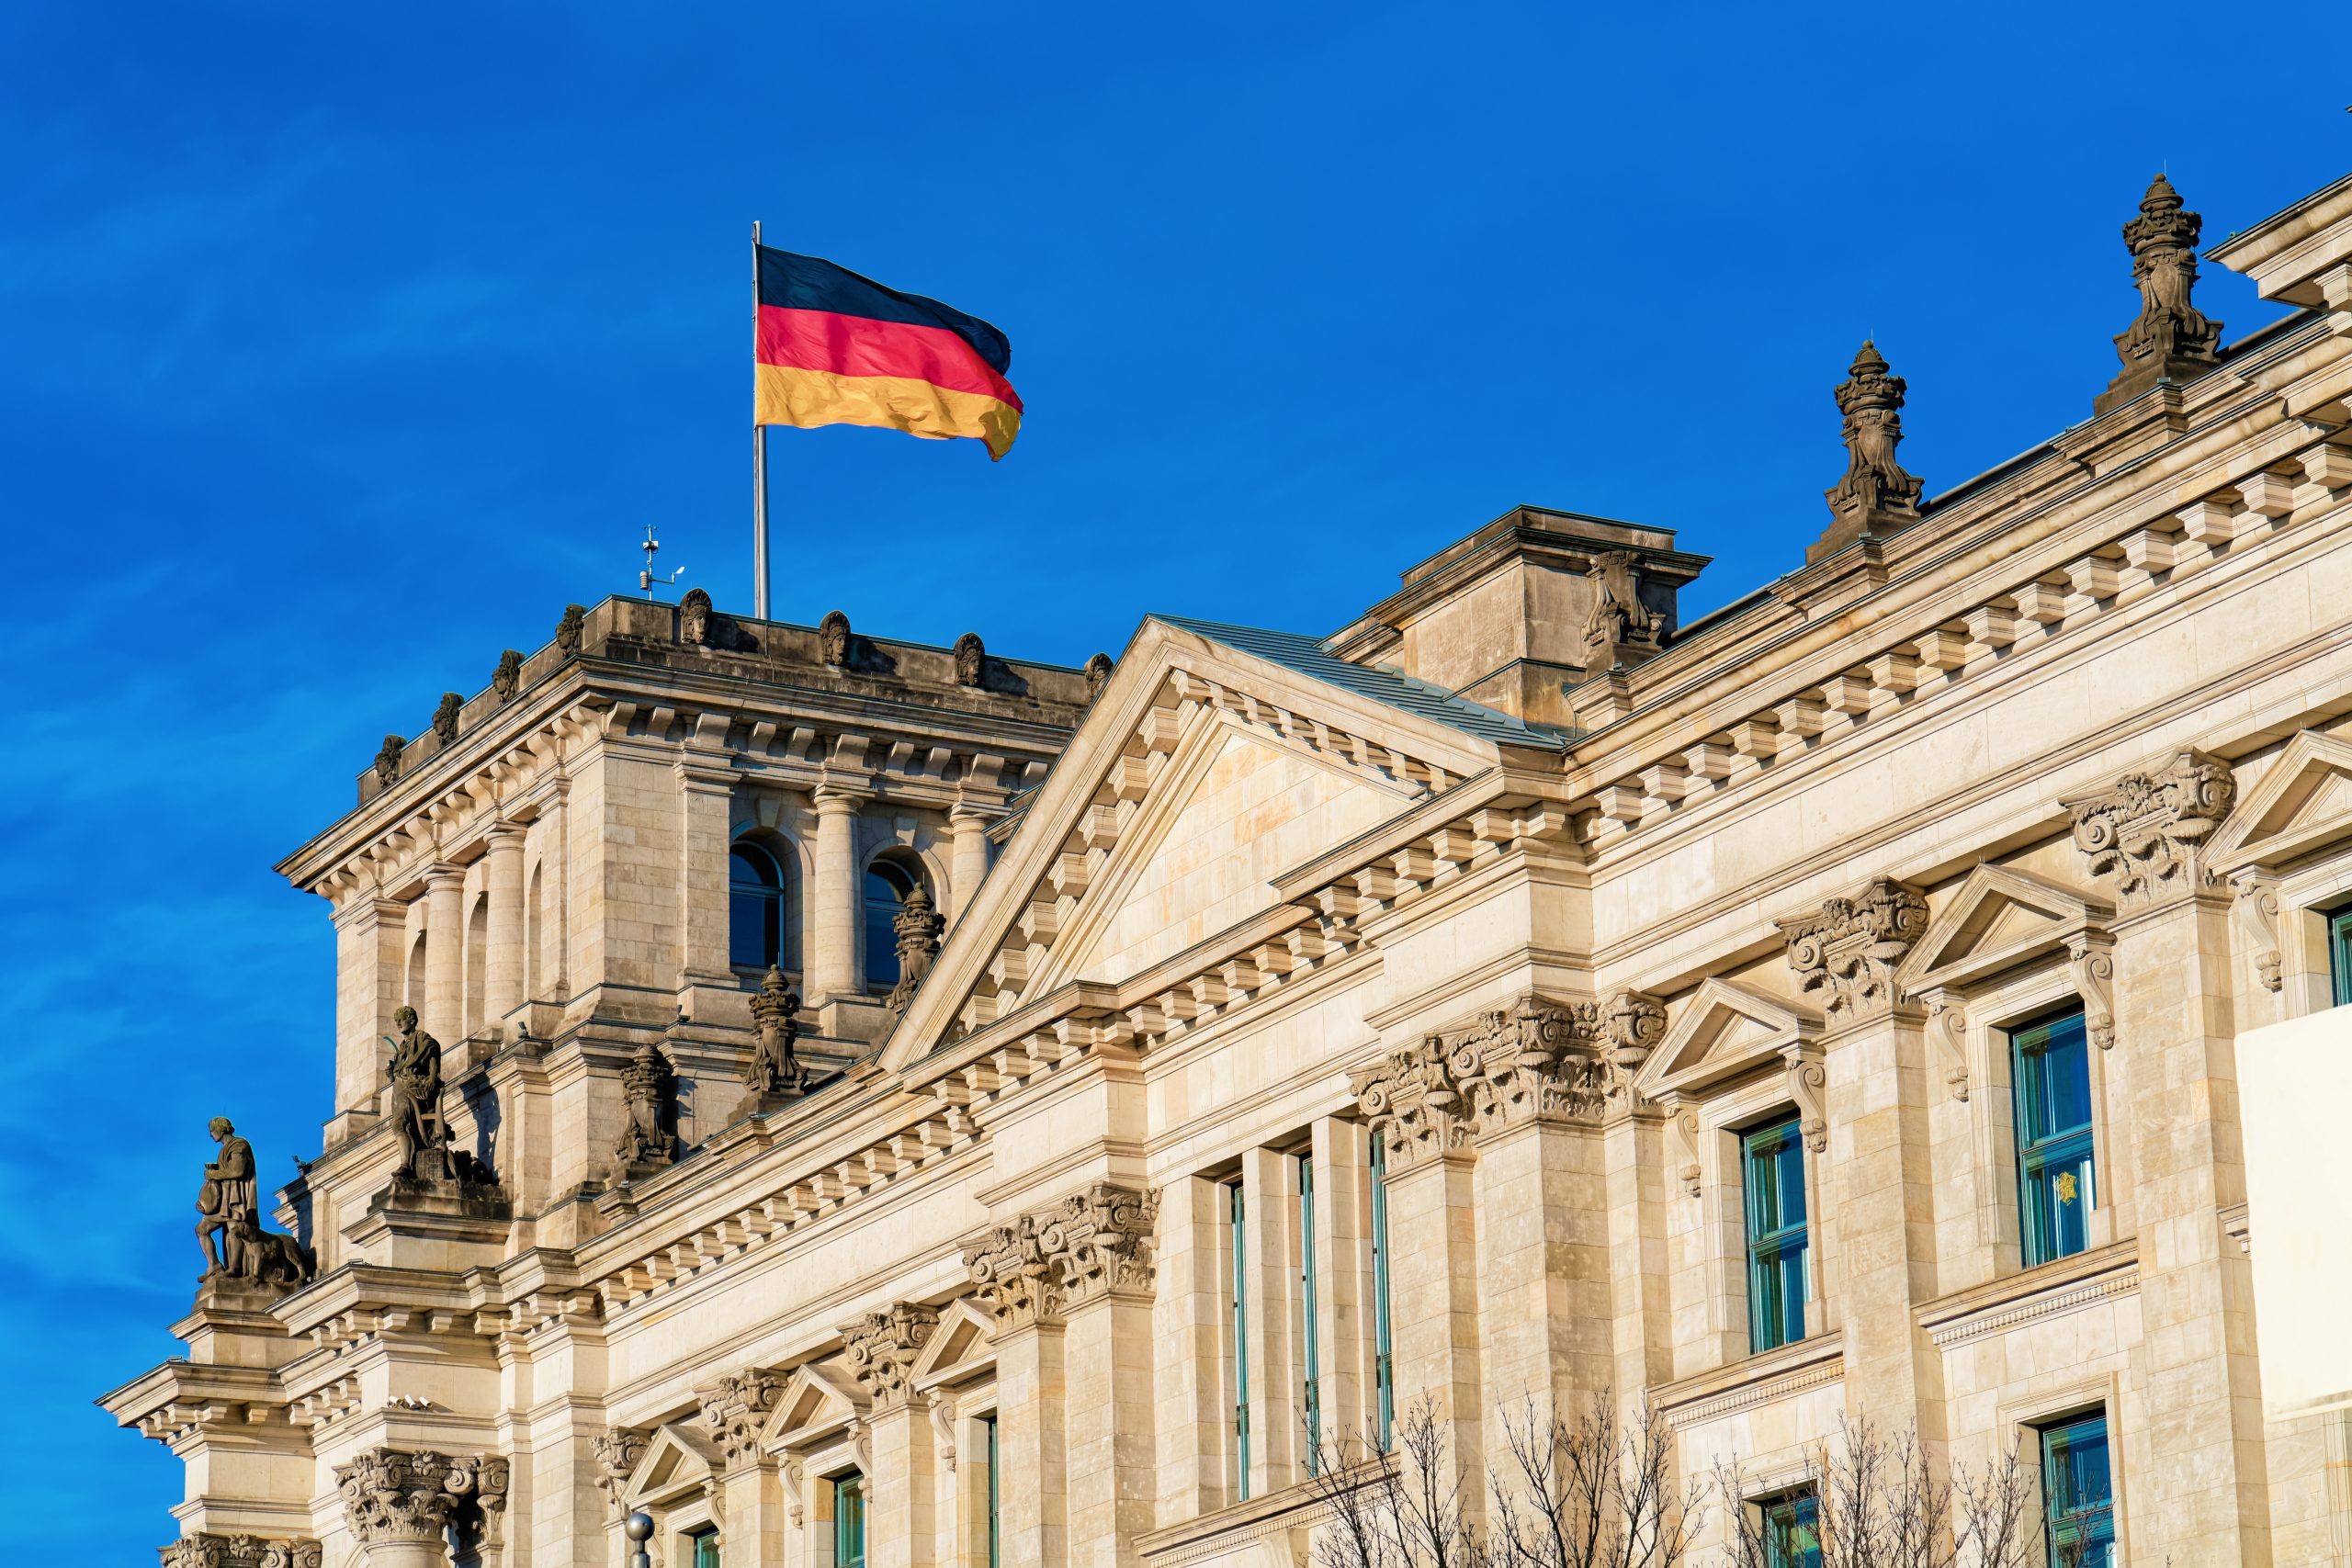 Arquitetura do edifício do Reichstag com a bandeira alemã no centro da cidade de Berlim, capital da Alemanha, no inverno, na rua. Casa do parlamento alemão Bundestag.